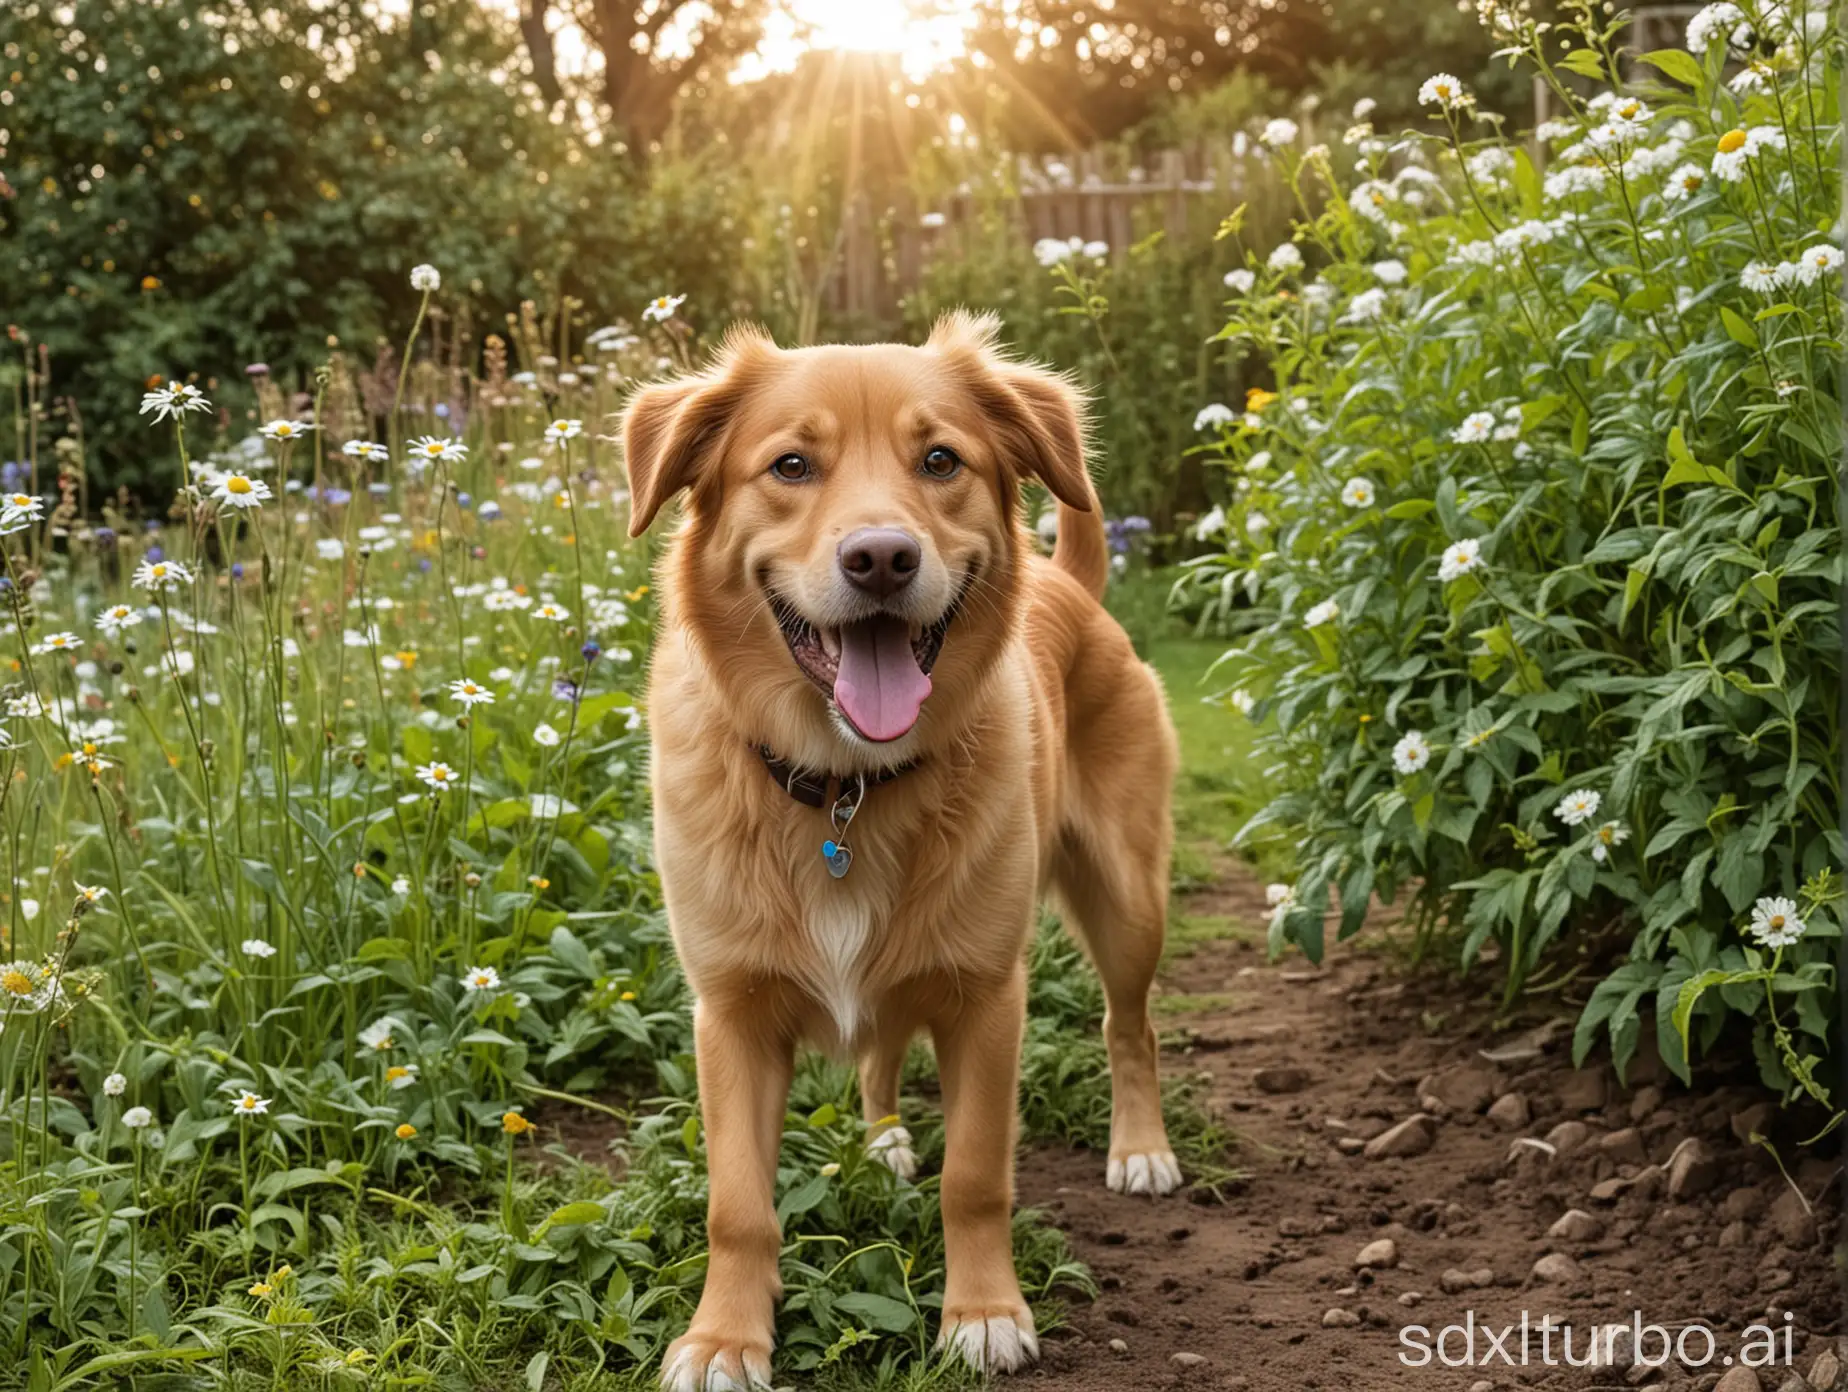 Joyful-Canine-Enjoying-Sunshine-in-the-Garden